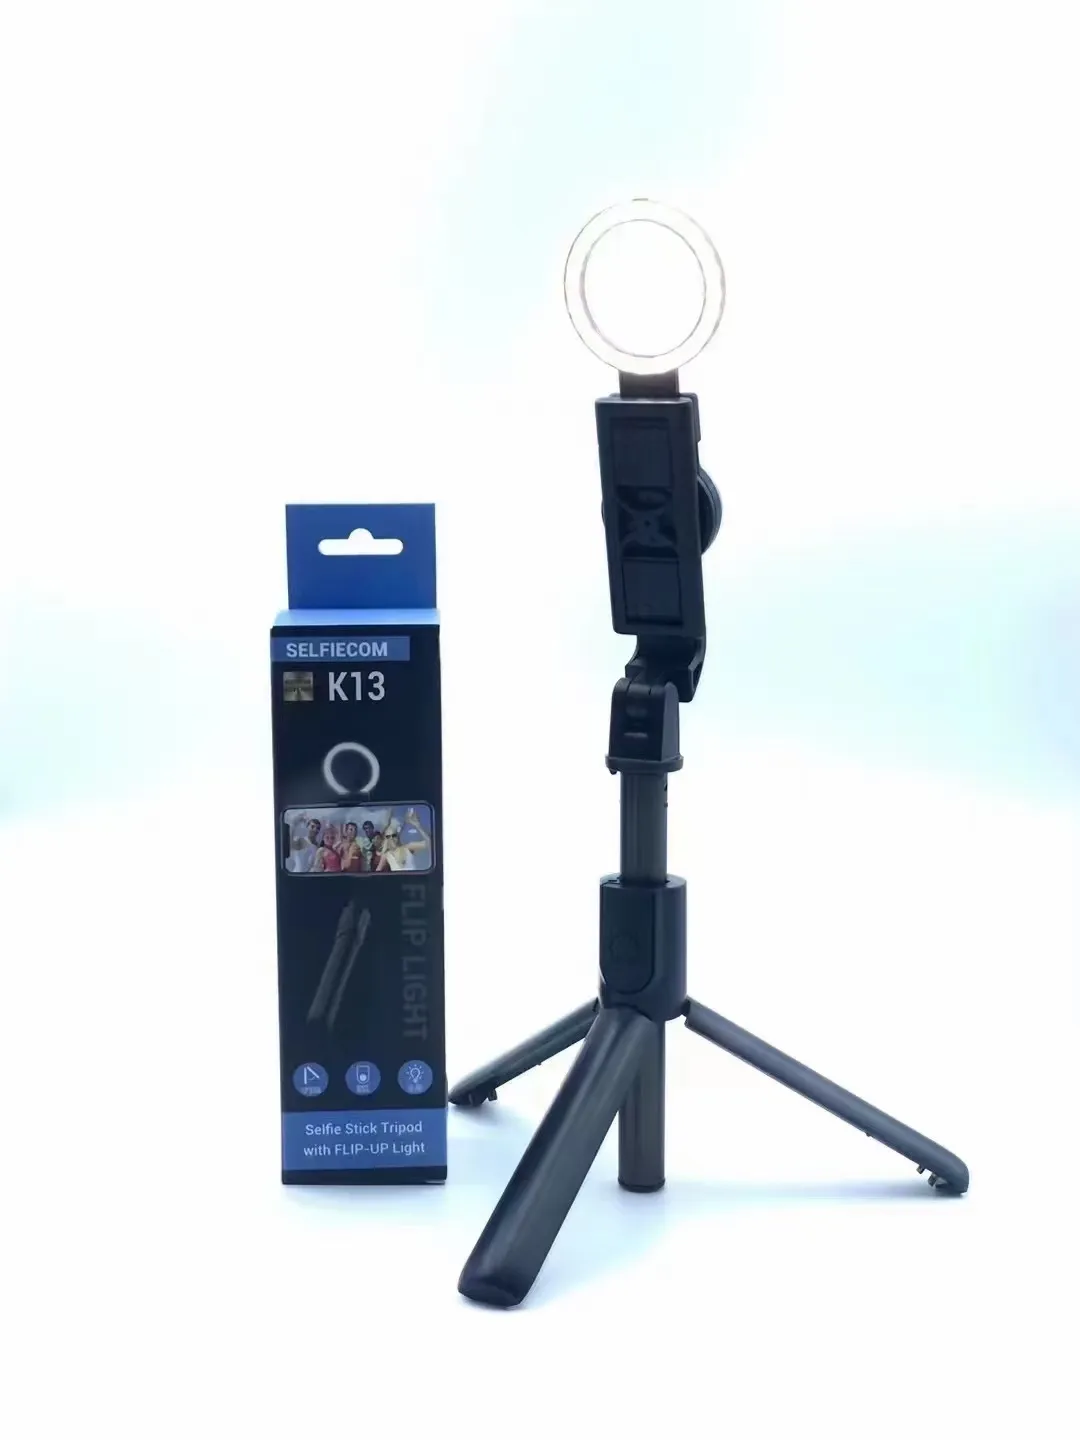 Multi-funzione K13 Selfie Monopods Wireless Bluetooth Remote Selfie Stick estensibile con luce FLIP-UP Supporto per telefono cellulare Treppiede per fotocamera